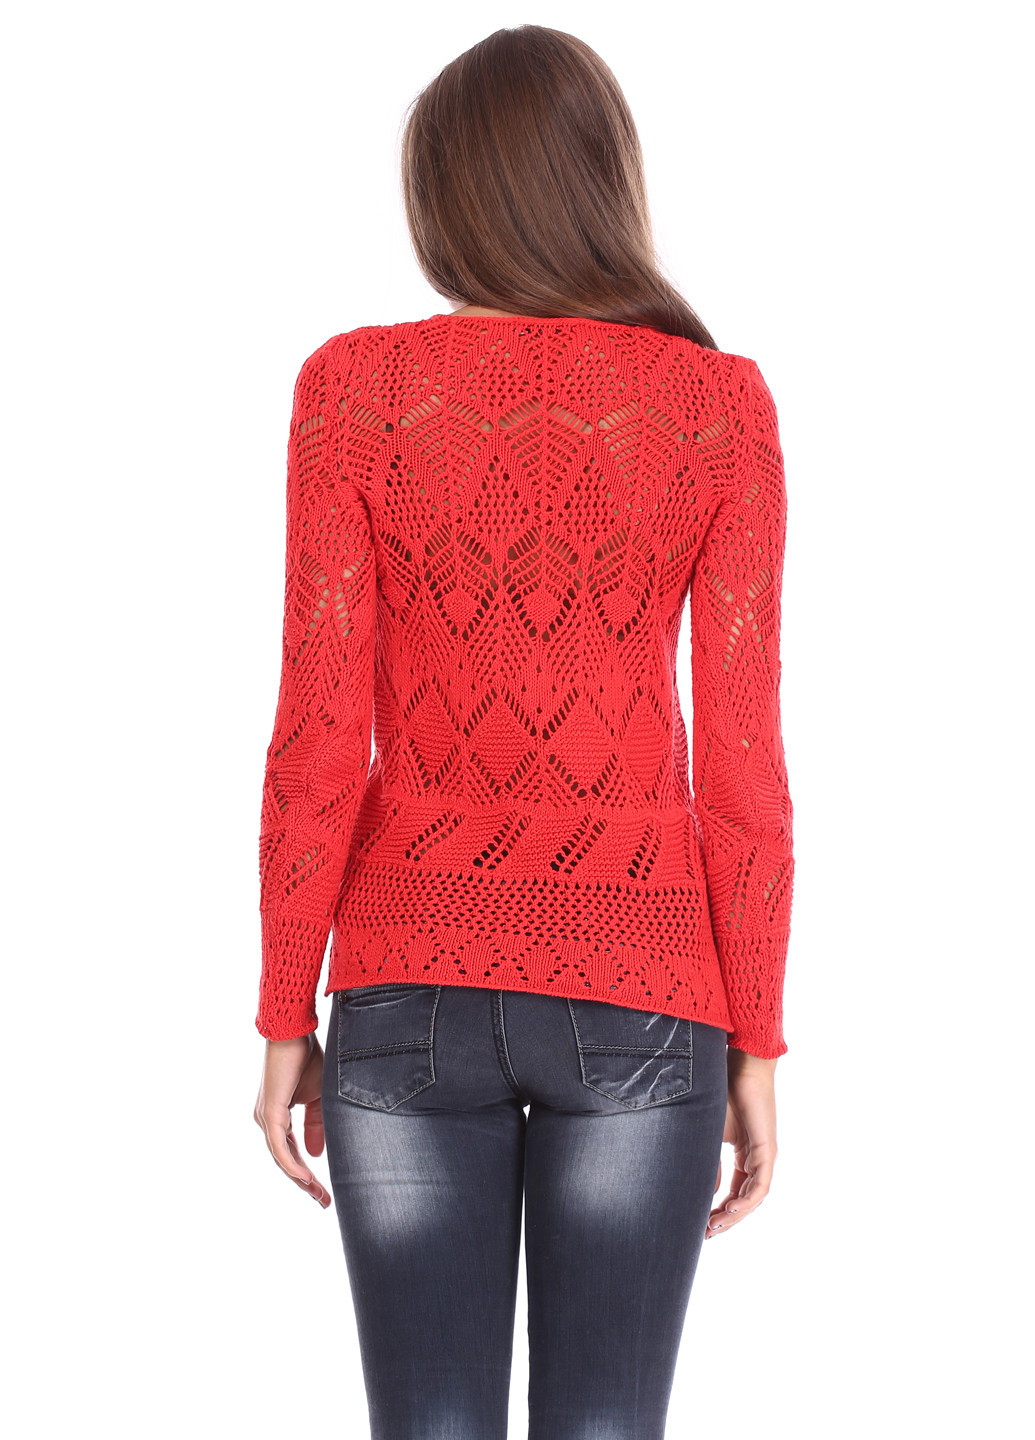 Коралловый демисезонный пуловер пуловер Folgore Milano